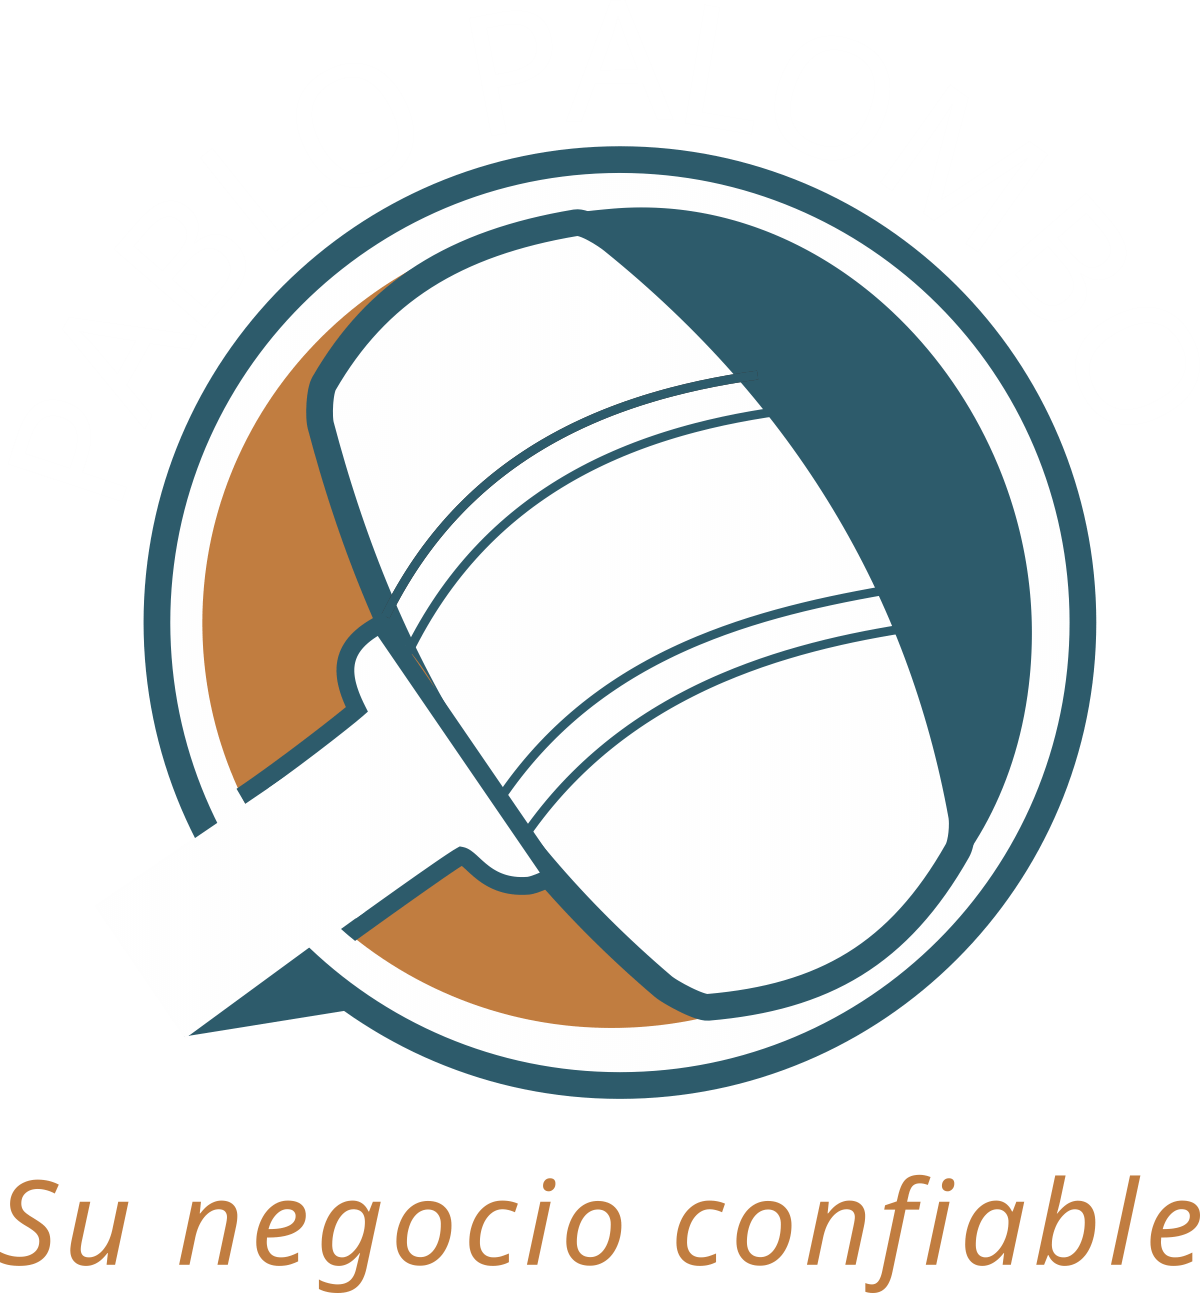 Pablo Palombo